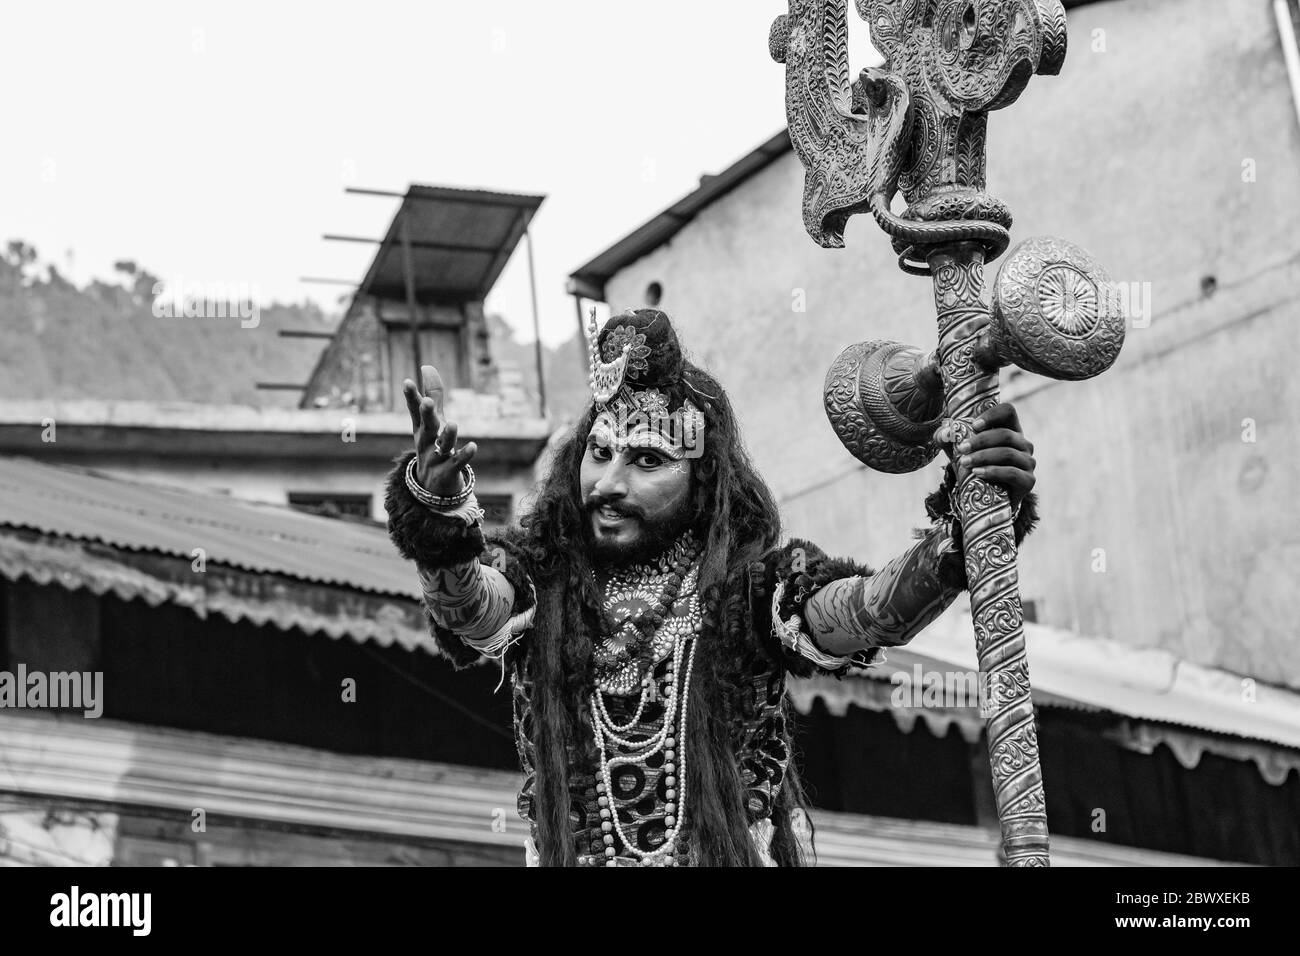 Ein Theaterkünstler in Chamba, Himachal Pradesh, Indien, das am Festival von Kullu Dussehra teilnimmt, das die Rolle von lord Shiva auch bekannt als Shiv Ji spielt Stockfoto